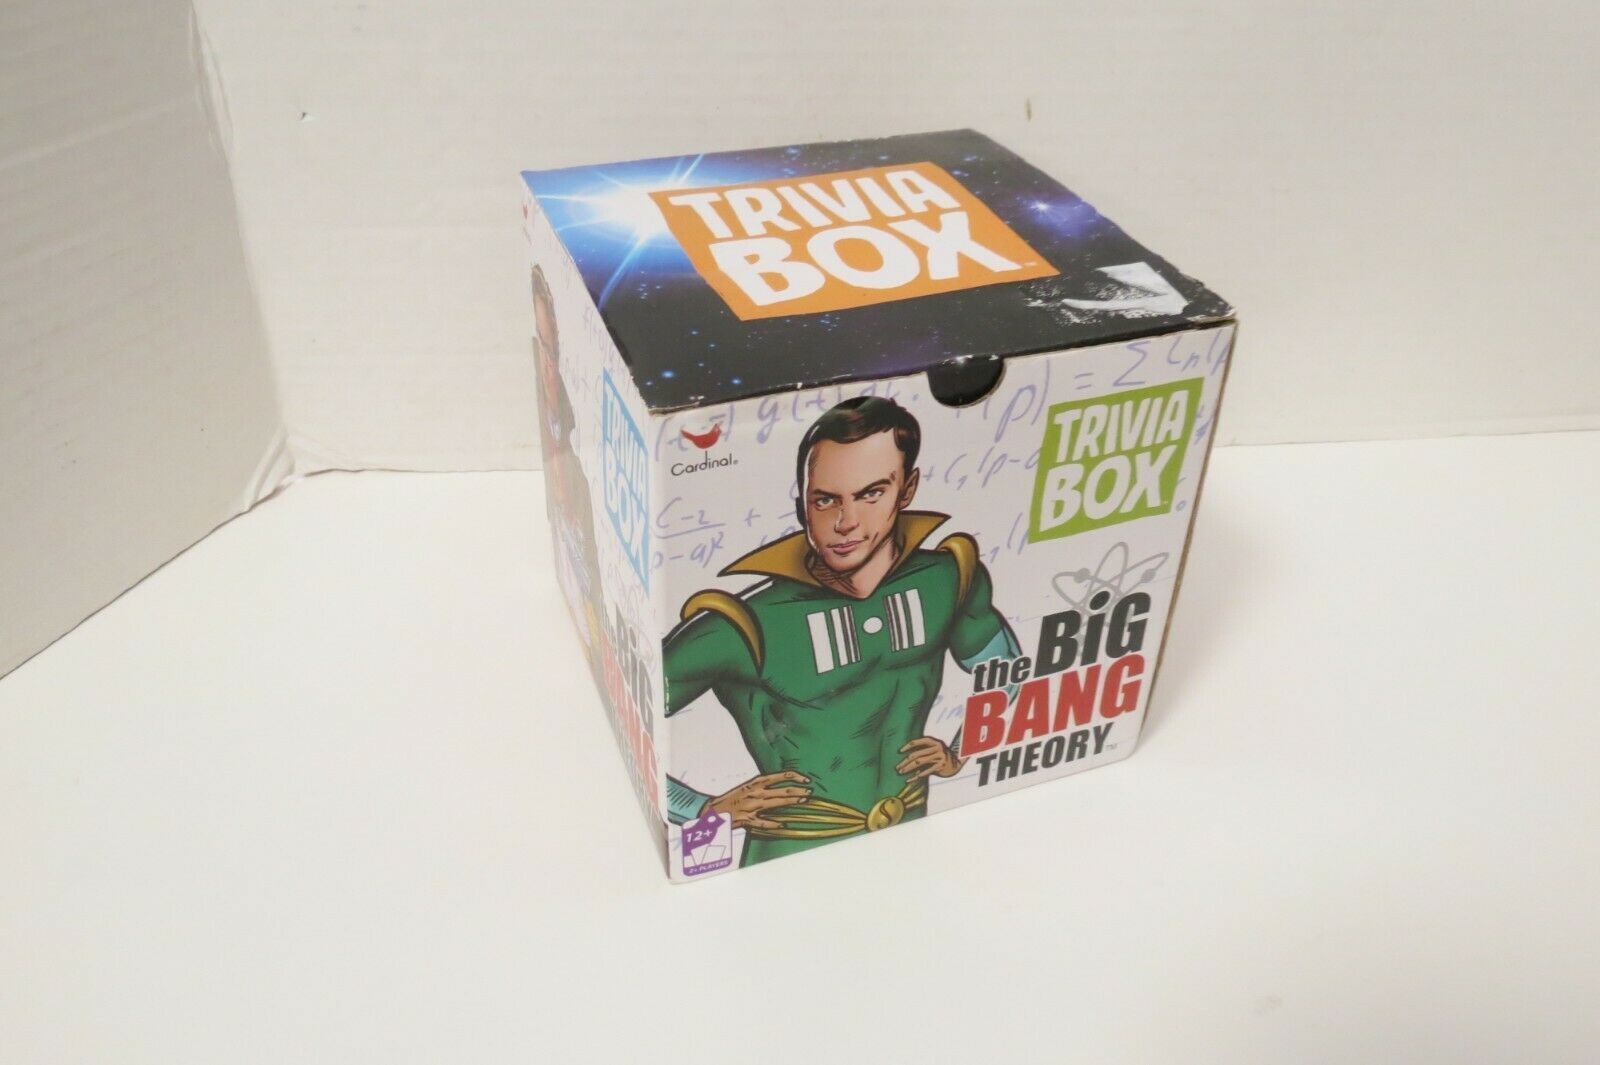 The Big Bang Theory Trivia Box By Cardinal In Original Box Cards Sealed - $11.00